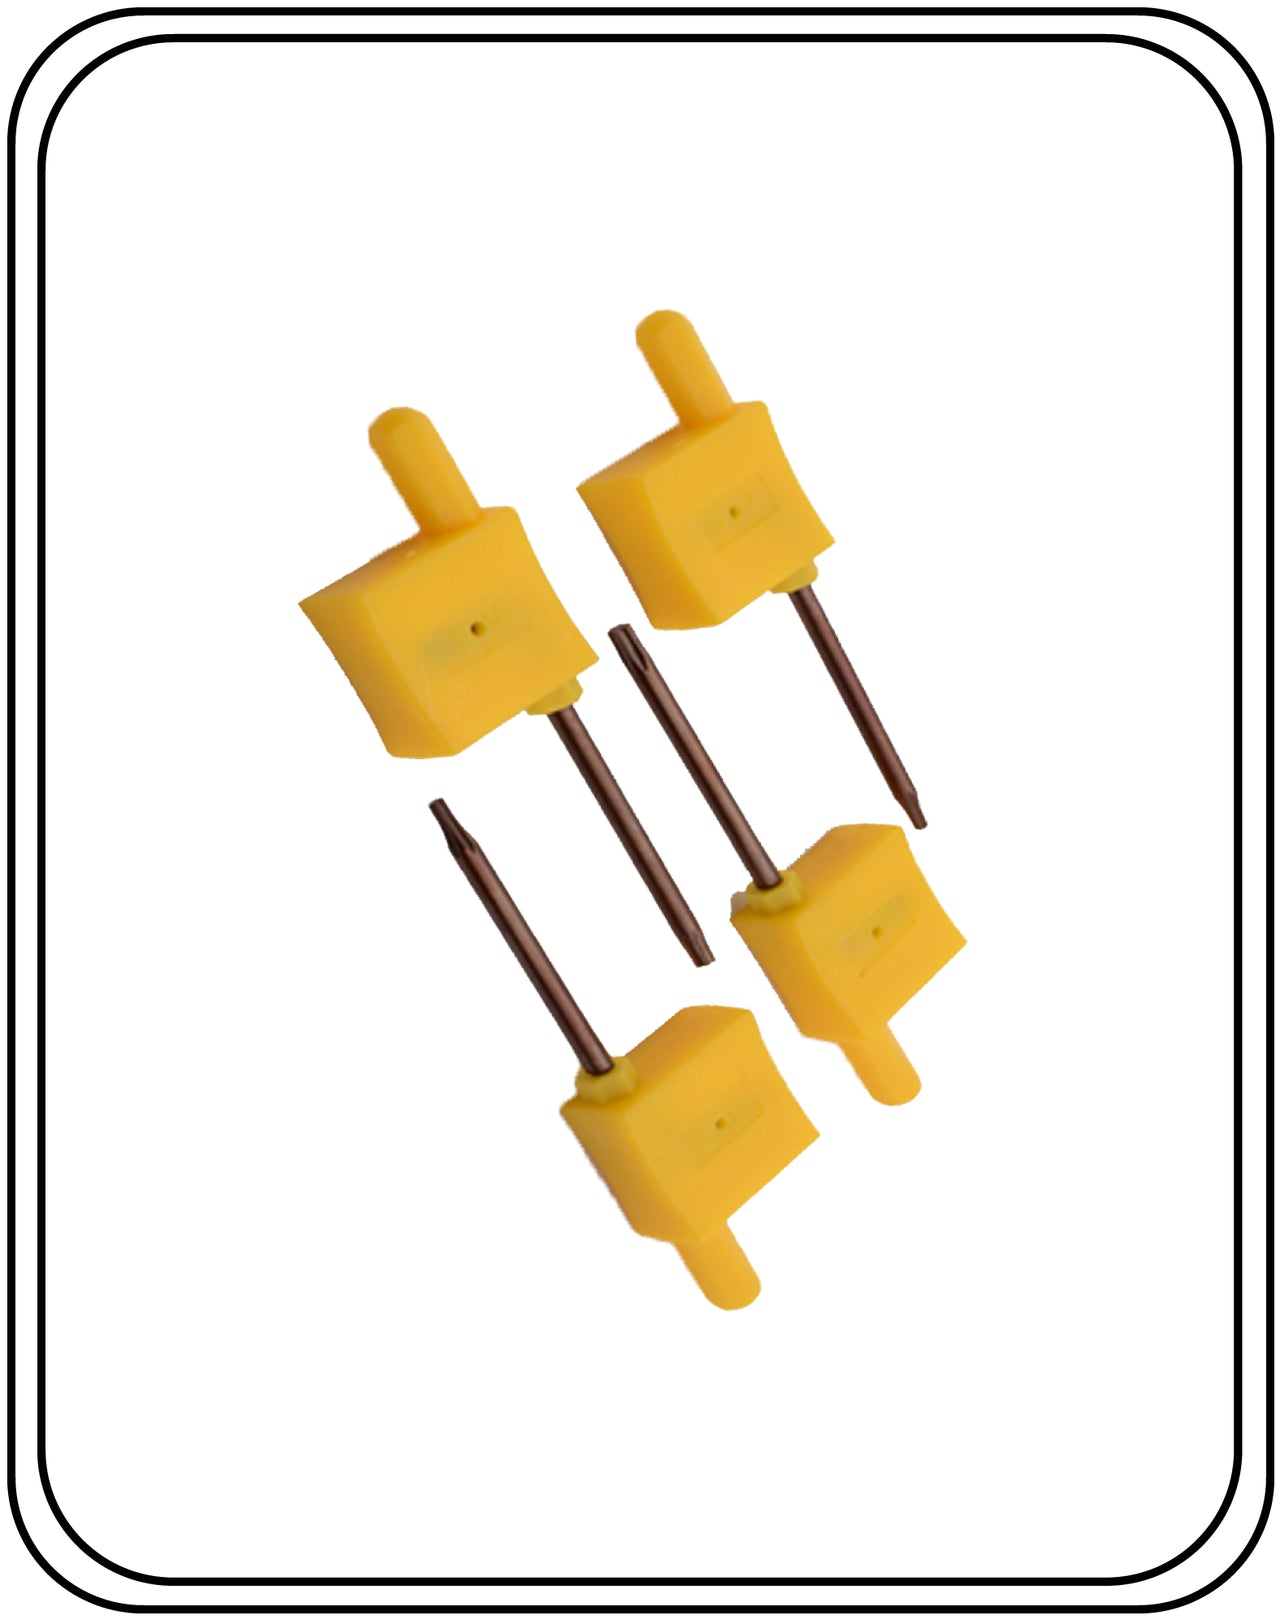 Torx Key Yellow Color T6,T7,T8,T9,T10,T15,T20 Pack Of 100 NOS.